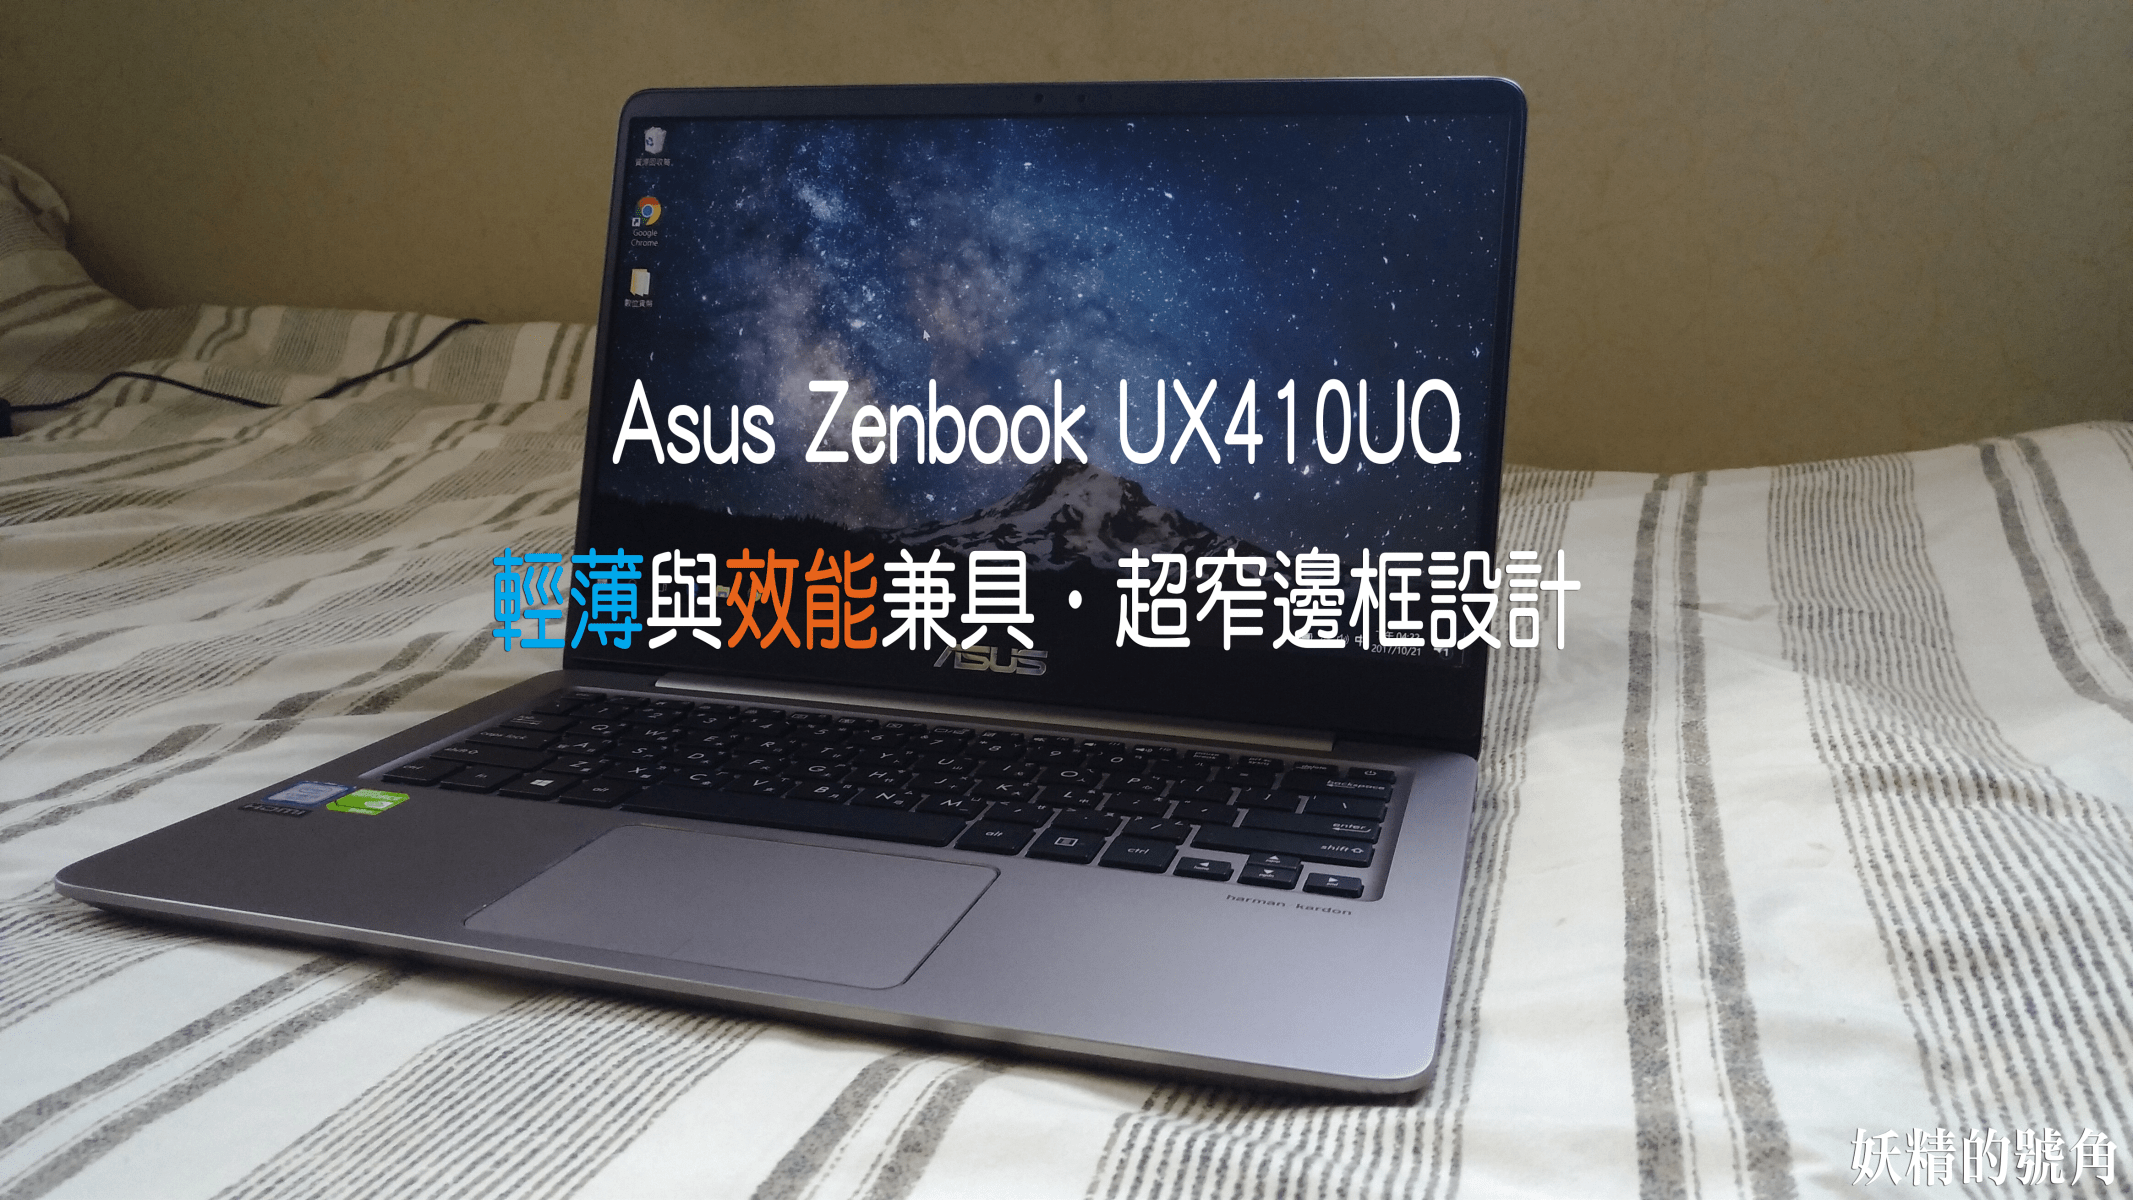 1 1 - [開箱] Asus Zenbook UX410UQ 輕便與效能兼顧的絕美窄邊框筆電